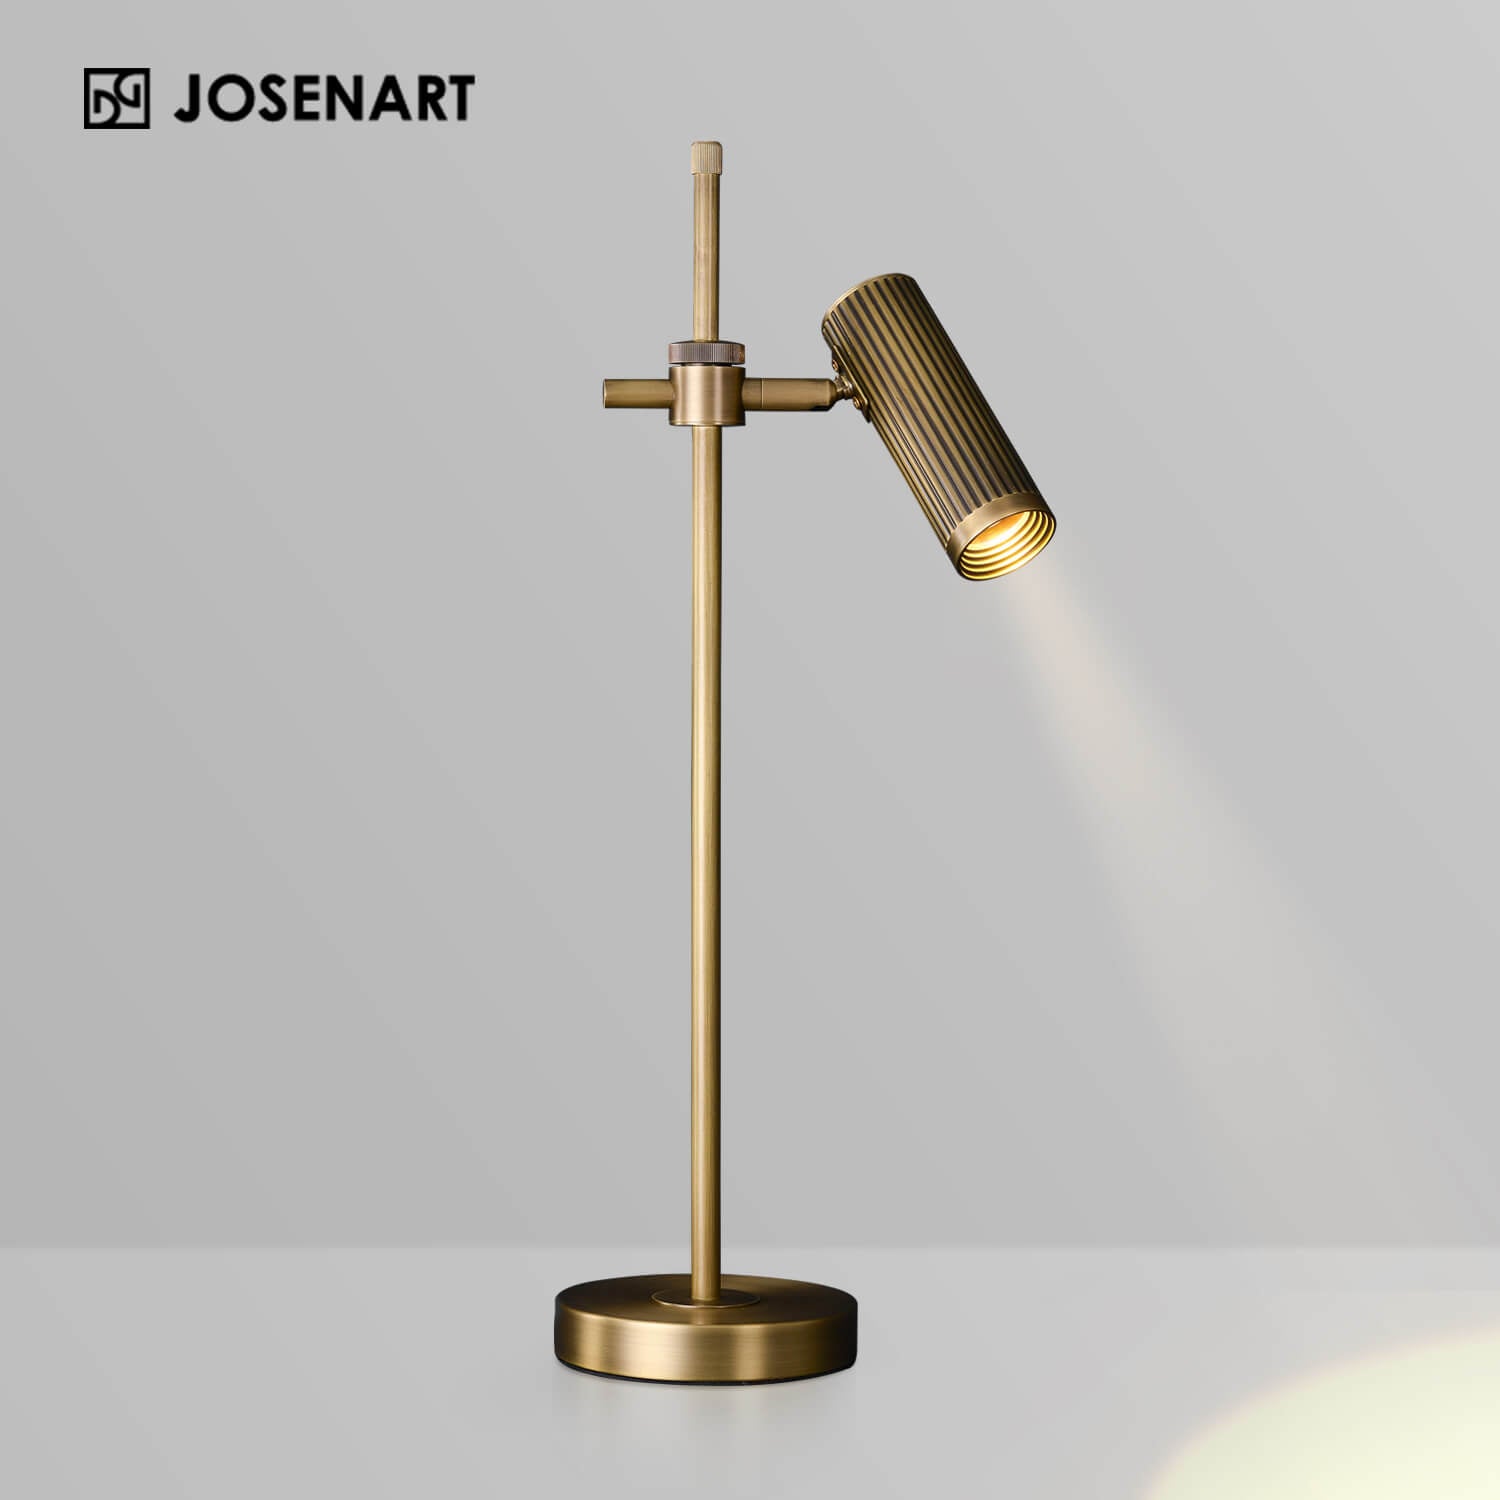 The Vintage Brass Adjustable Table Light JOSENART Josenart